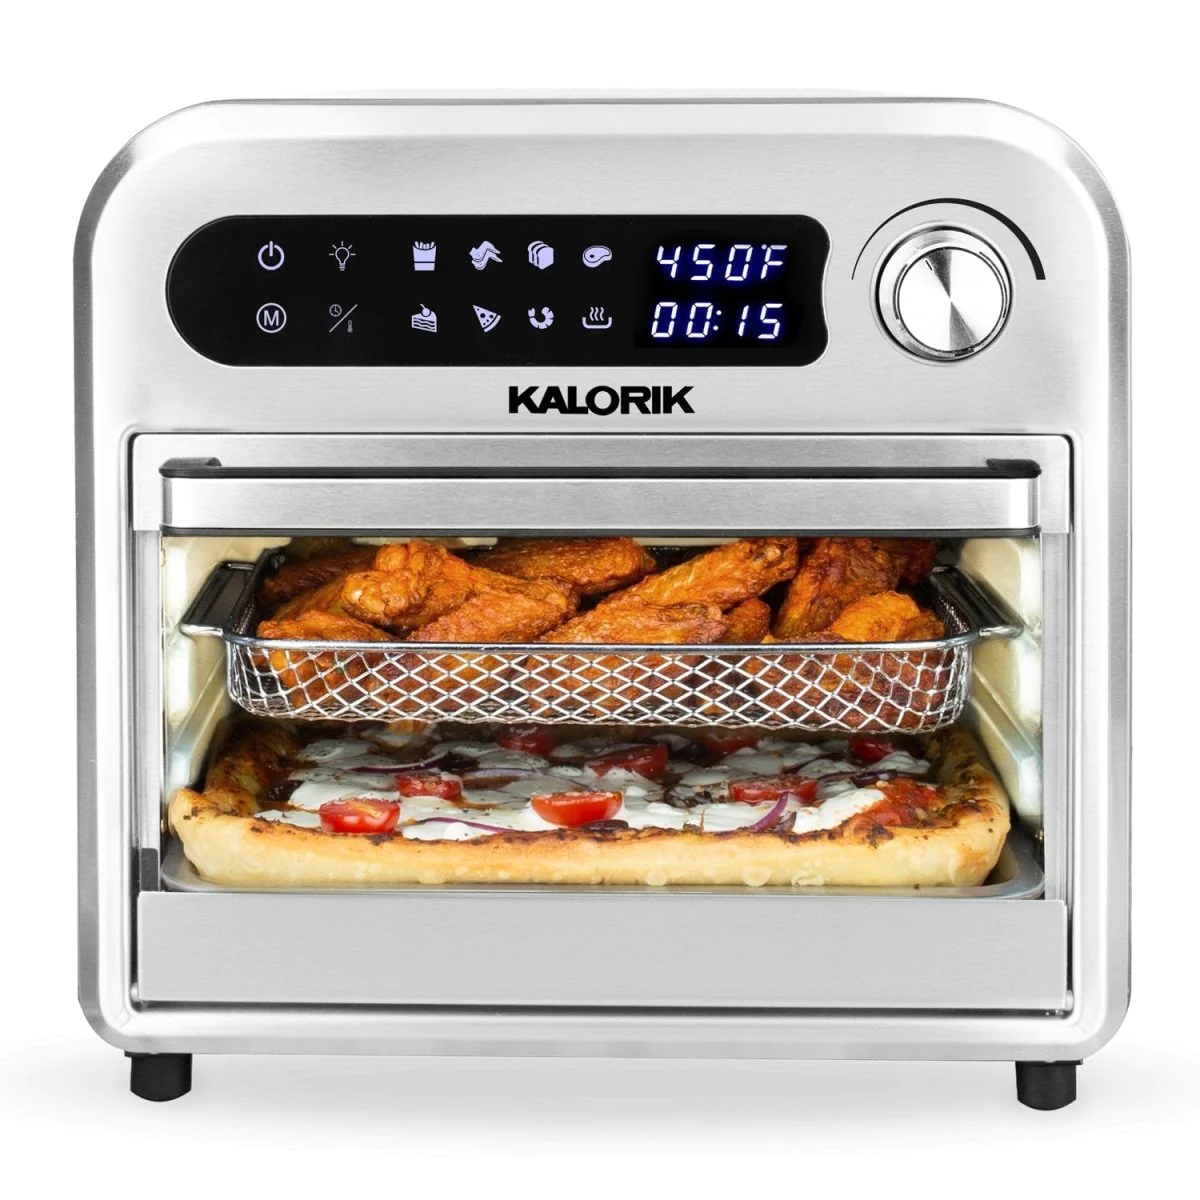 Kalorik 12.6qt. Digital Air Fryer And Oven